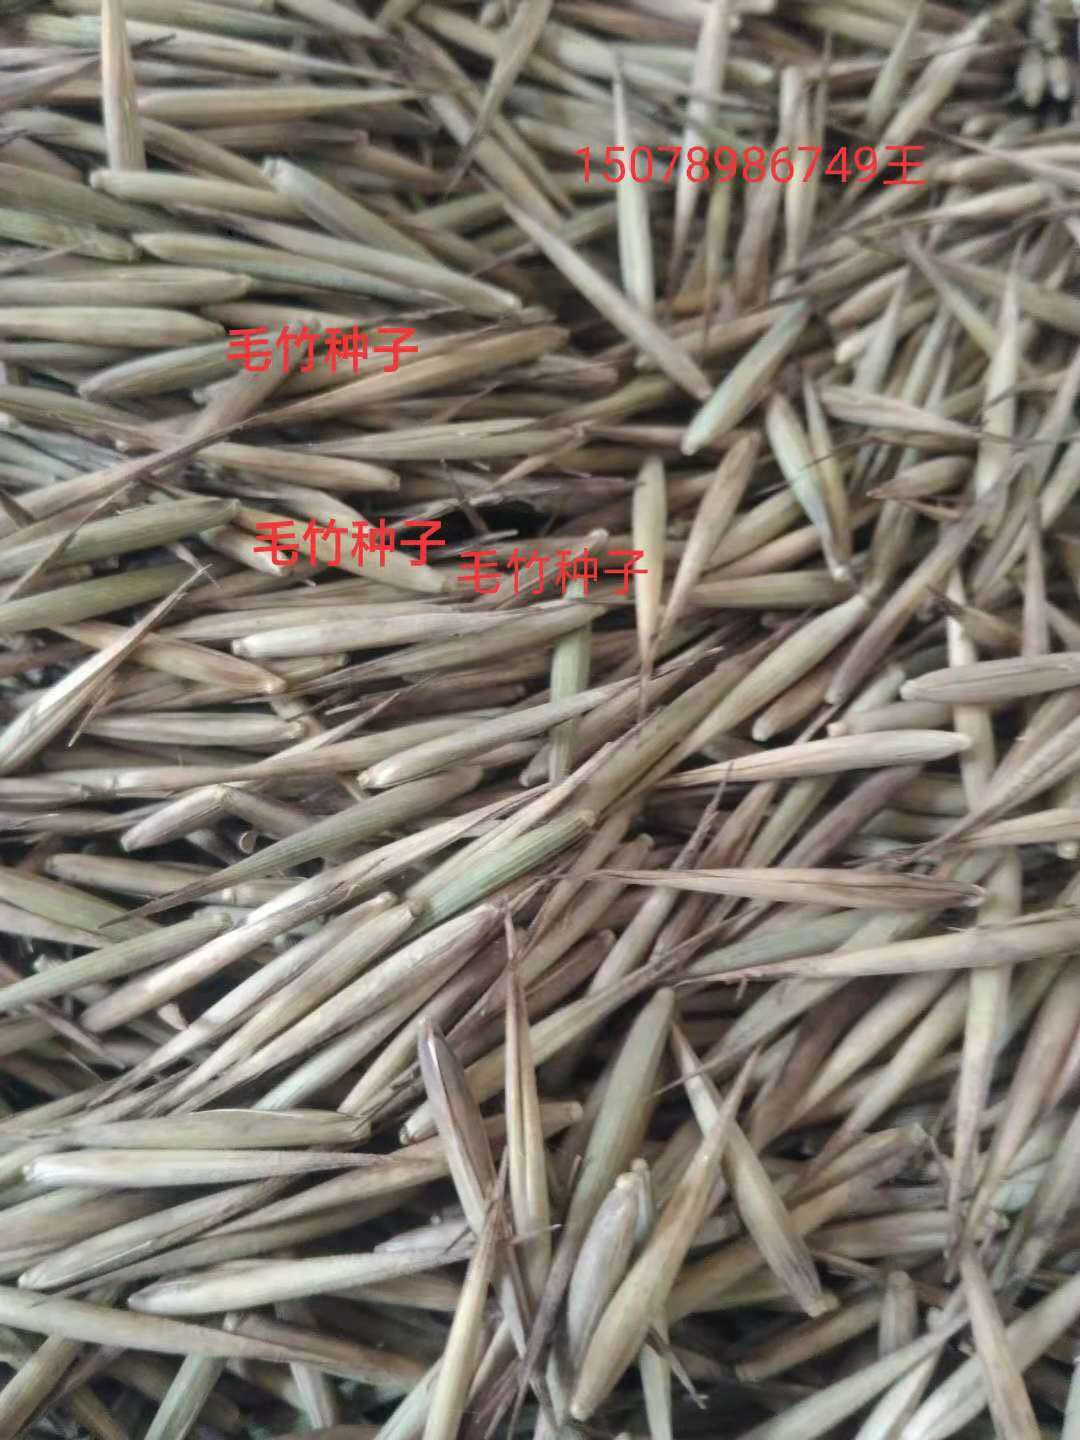 供应广西桂林毛竹种子厂家直销-优质毛竹种子基地采购报价批发价格-毛竹种子种植方法技术质量哪家好